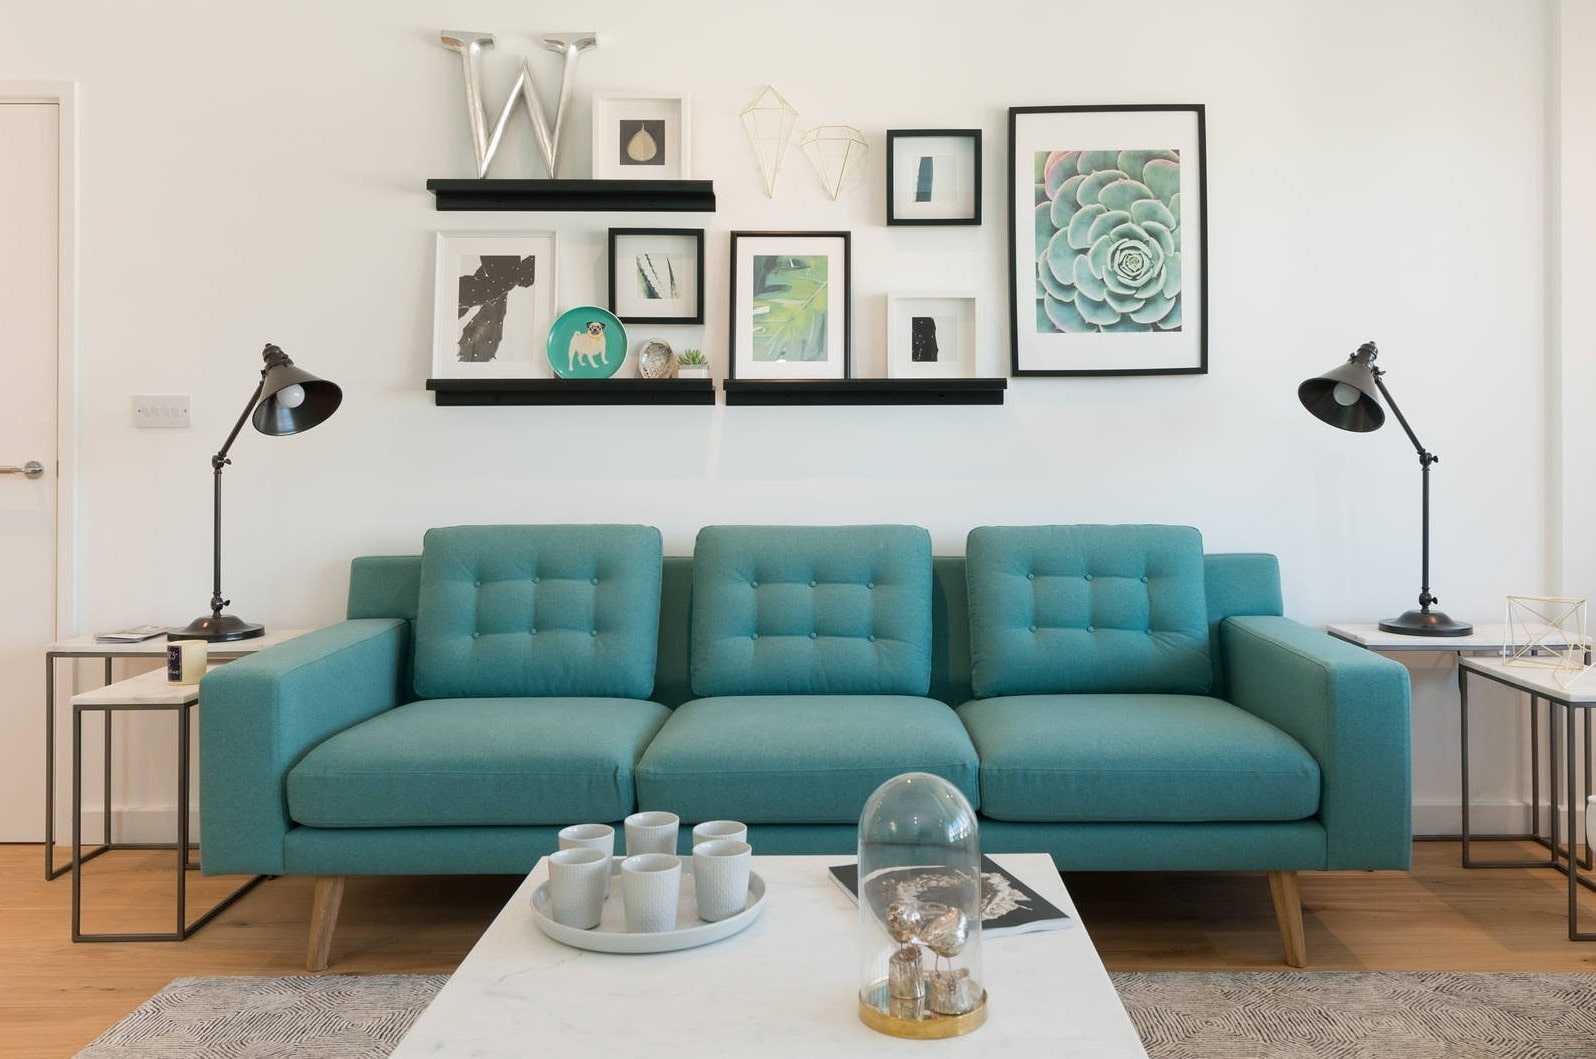 Компактный диван кровать — идеальная мягкая мебель для маленькой комнаты